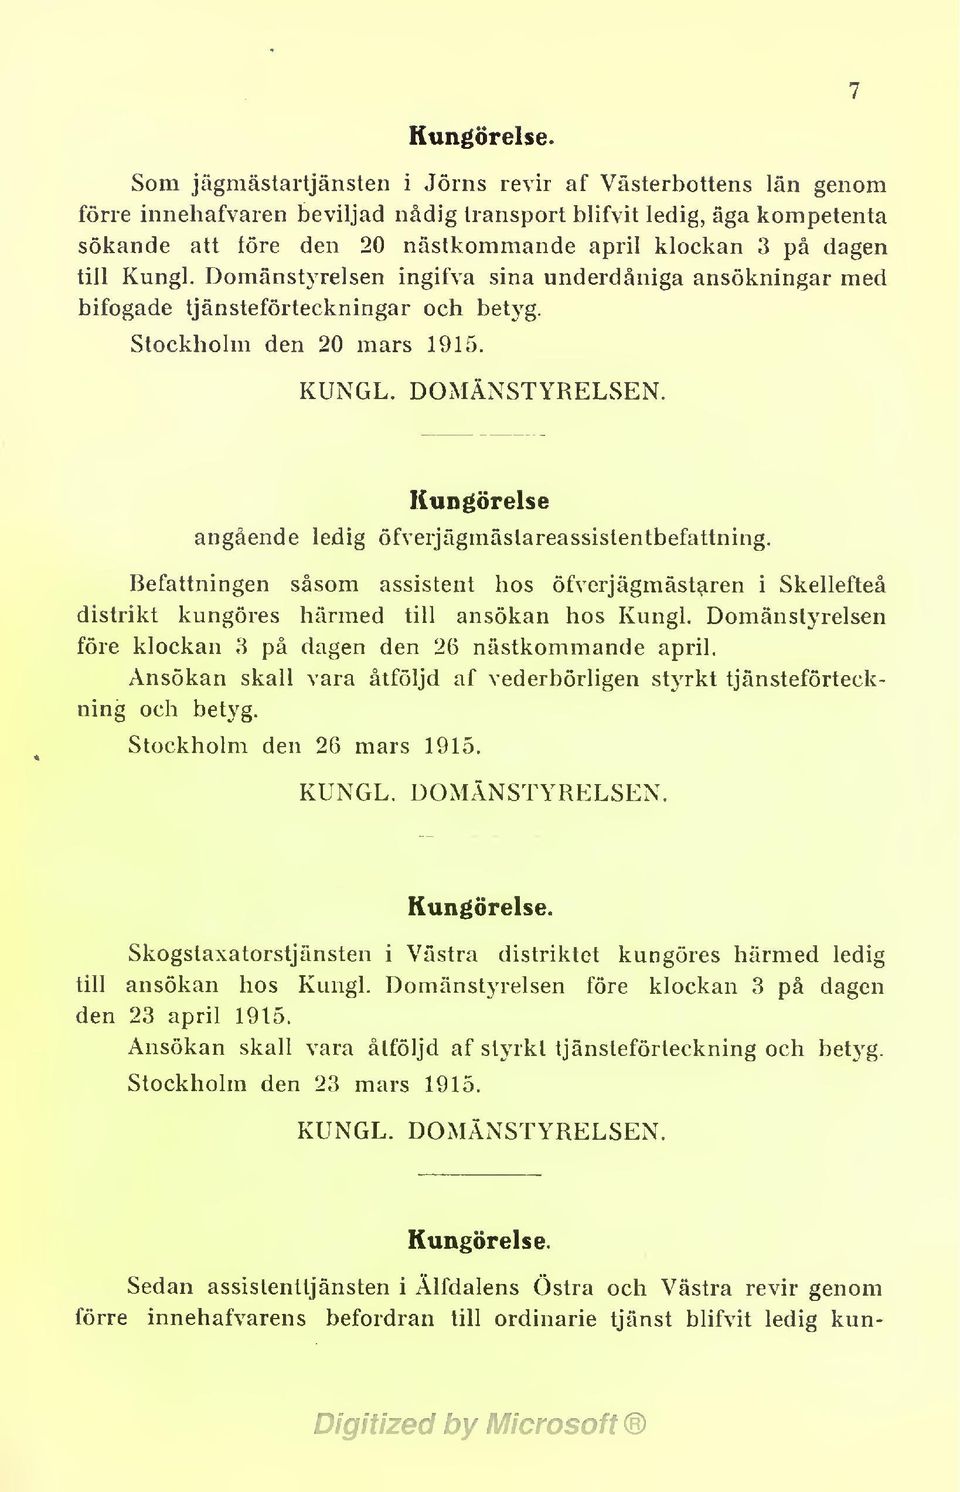 till Kungl. Domänstyrelsen ingifva sina underdåniga ansökningar med bifogade tjänsteförteckningar och betyg. Stockholm den 20 mars 1915. KUNGL. DOMÄNSTYRELSEN.